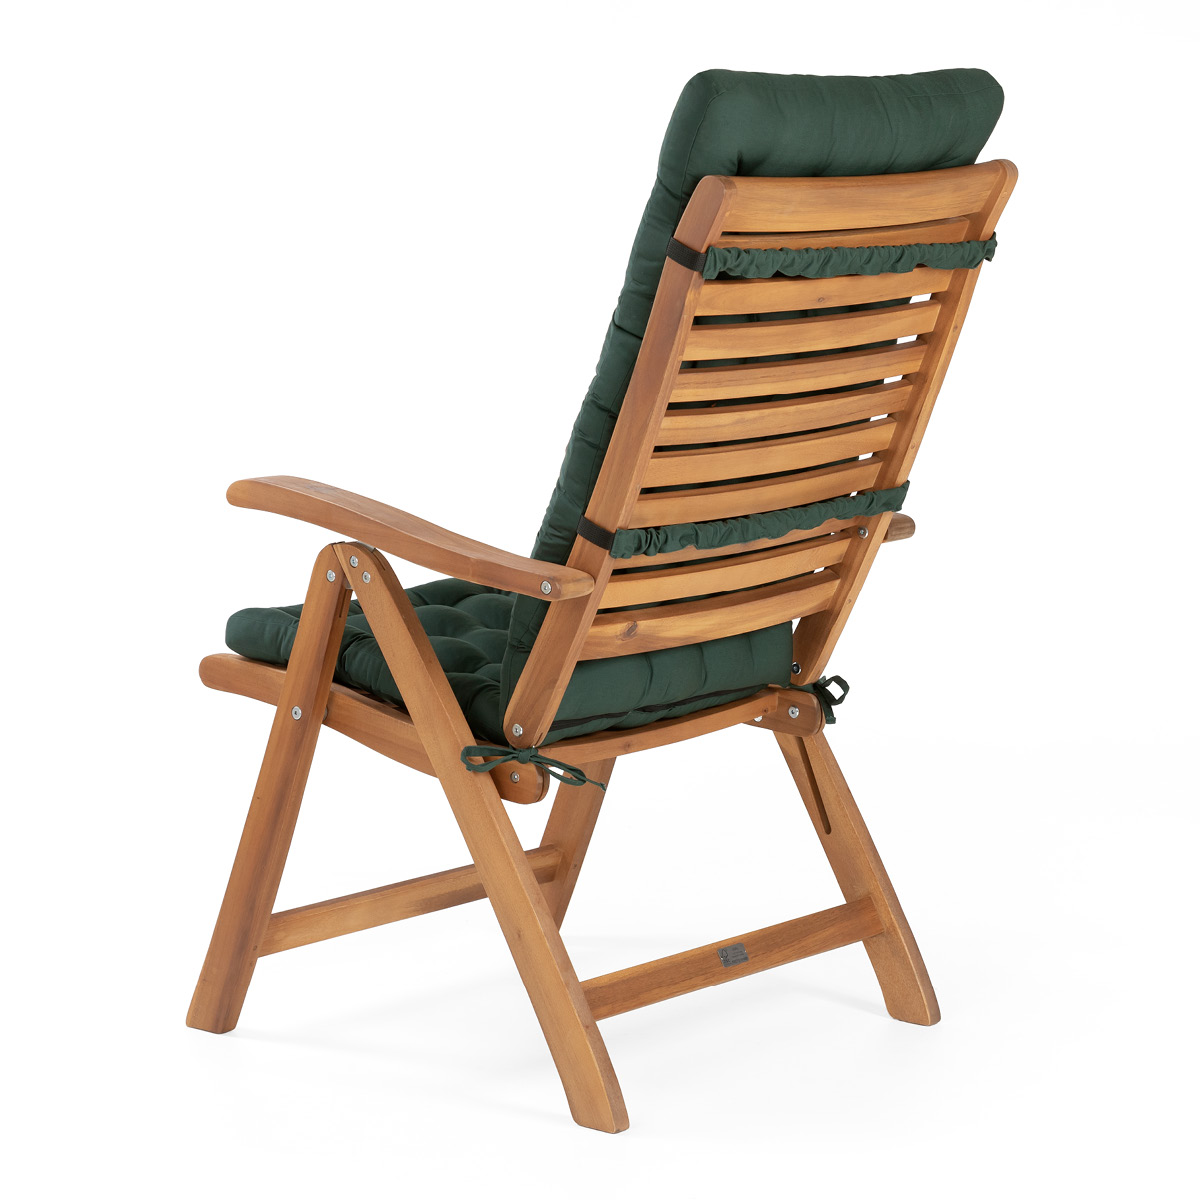 Sitzauflage Hochlehner für hochwertige Hochlehner-Gartenstühle aus Holz | hochwertige Sitzauflagen dunkelgrün mit Befestigungsbändern | HAVE A SEAT Living